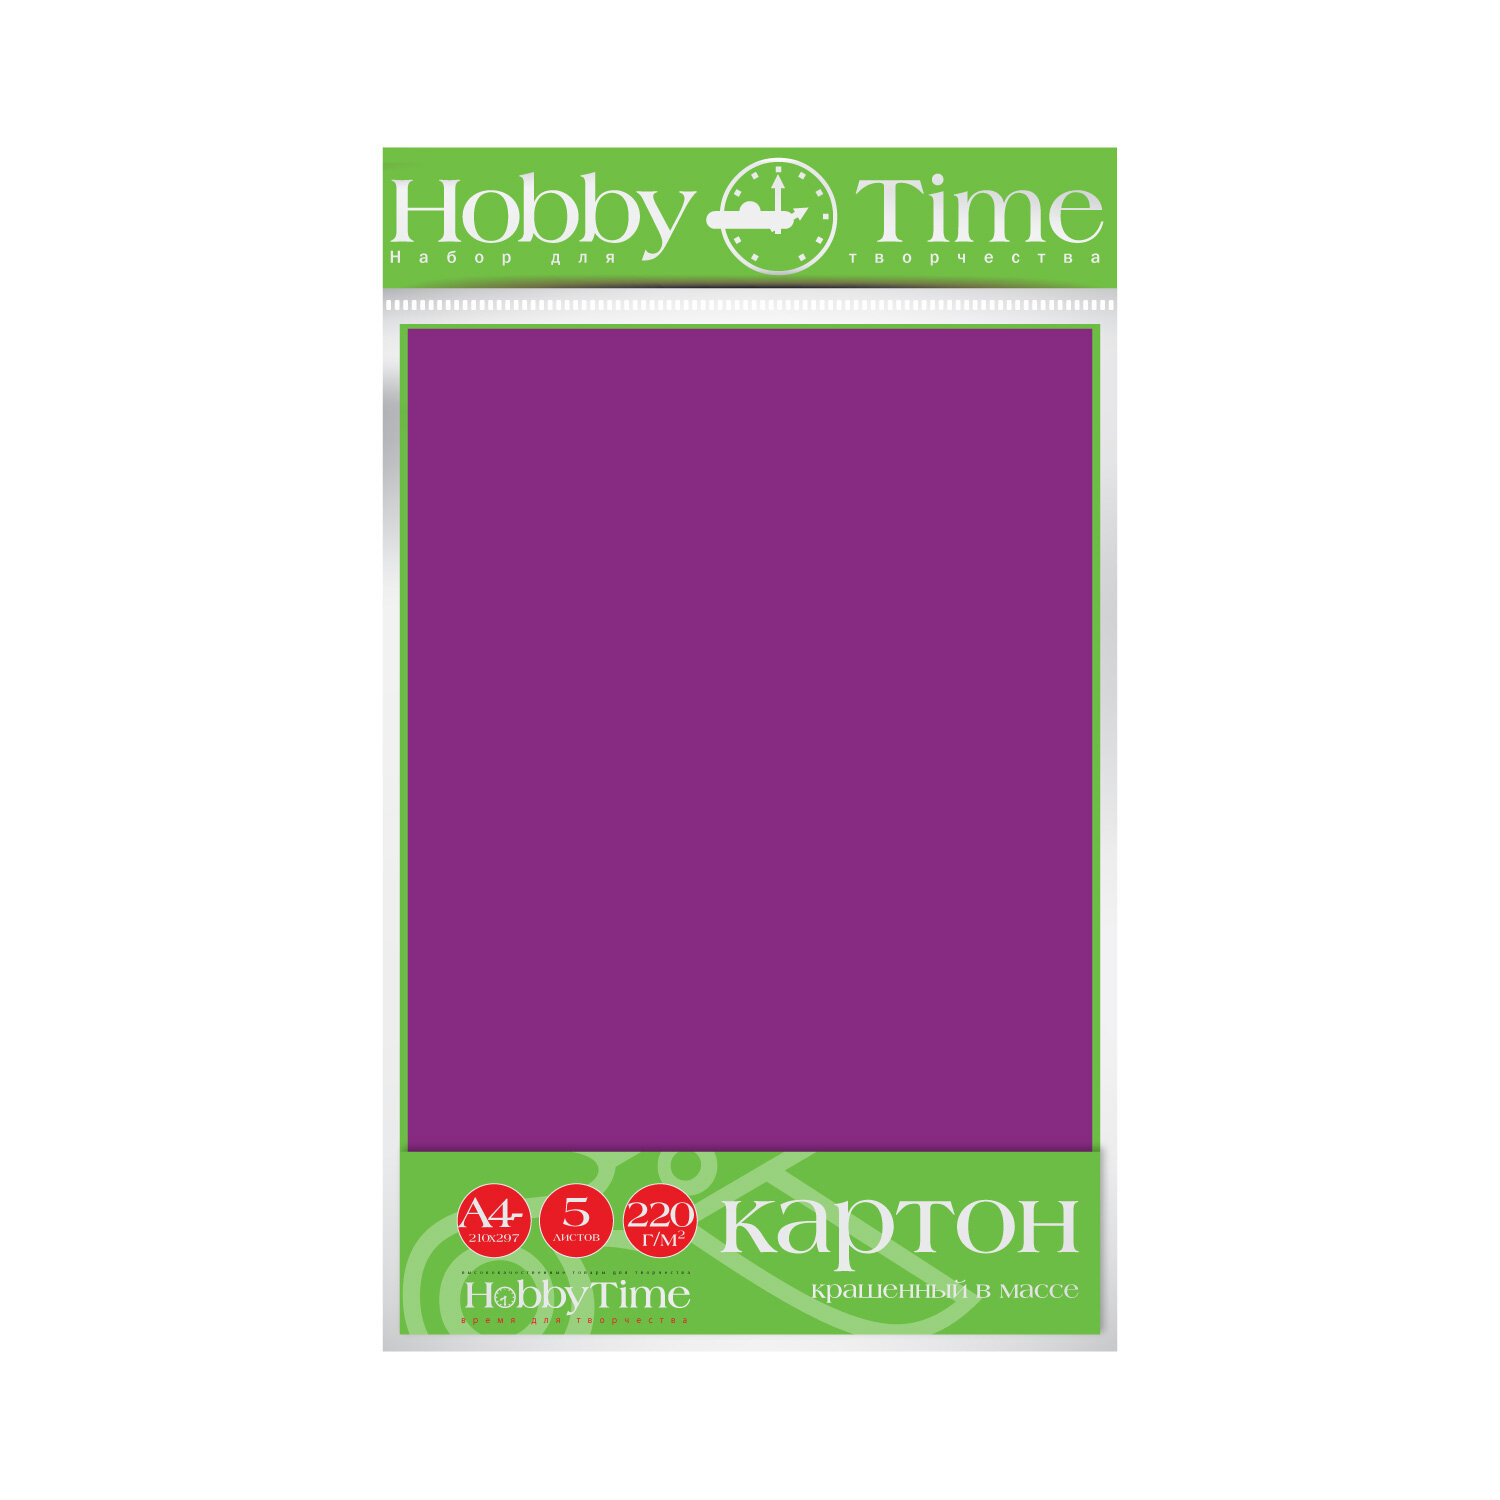 Набор цветного картона HOBBY TIME, А4 (222 х 352 мм), 5 листов, крашенный в массе, фиолетовый, Арт : 2-063/12